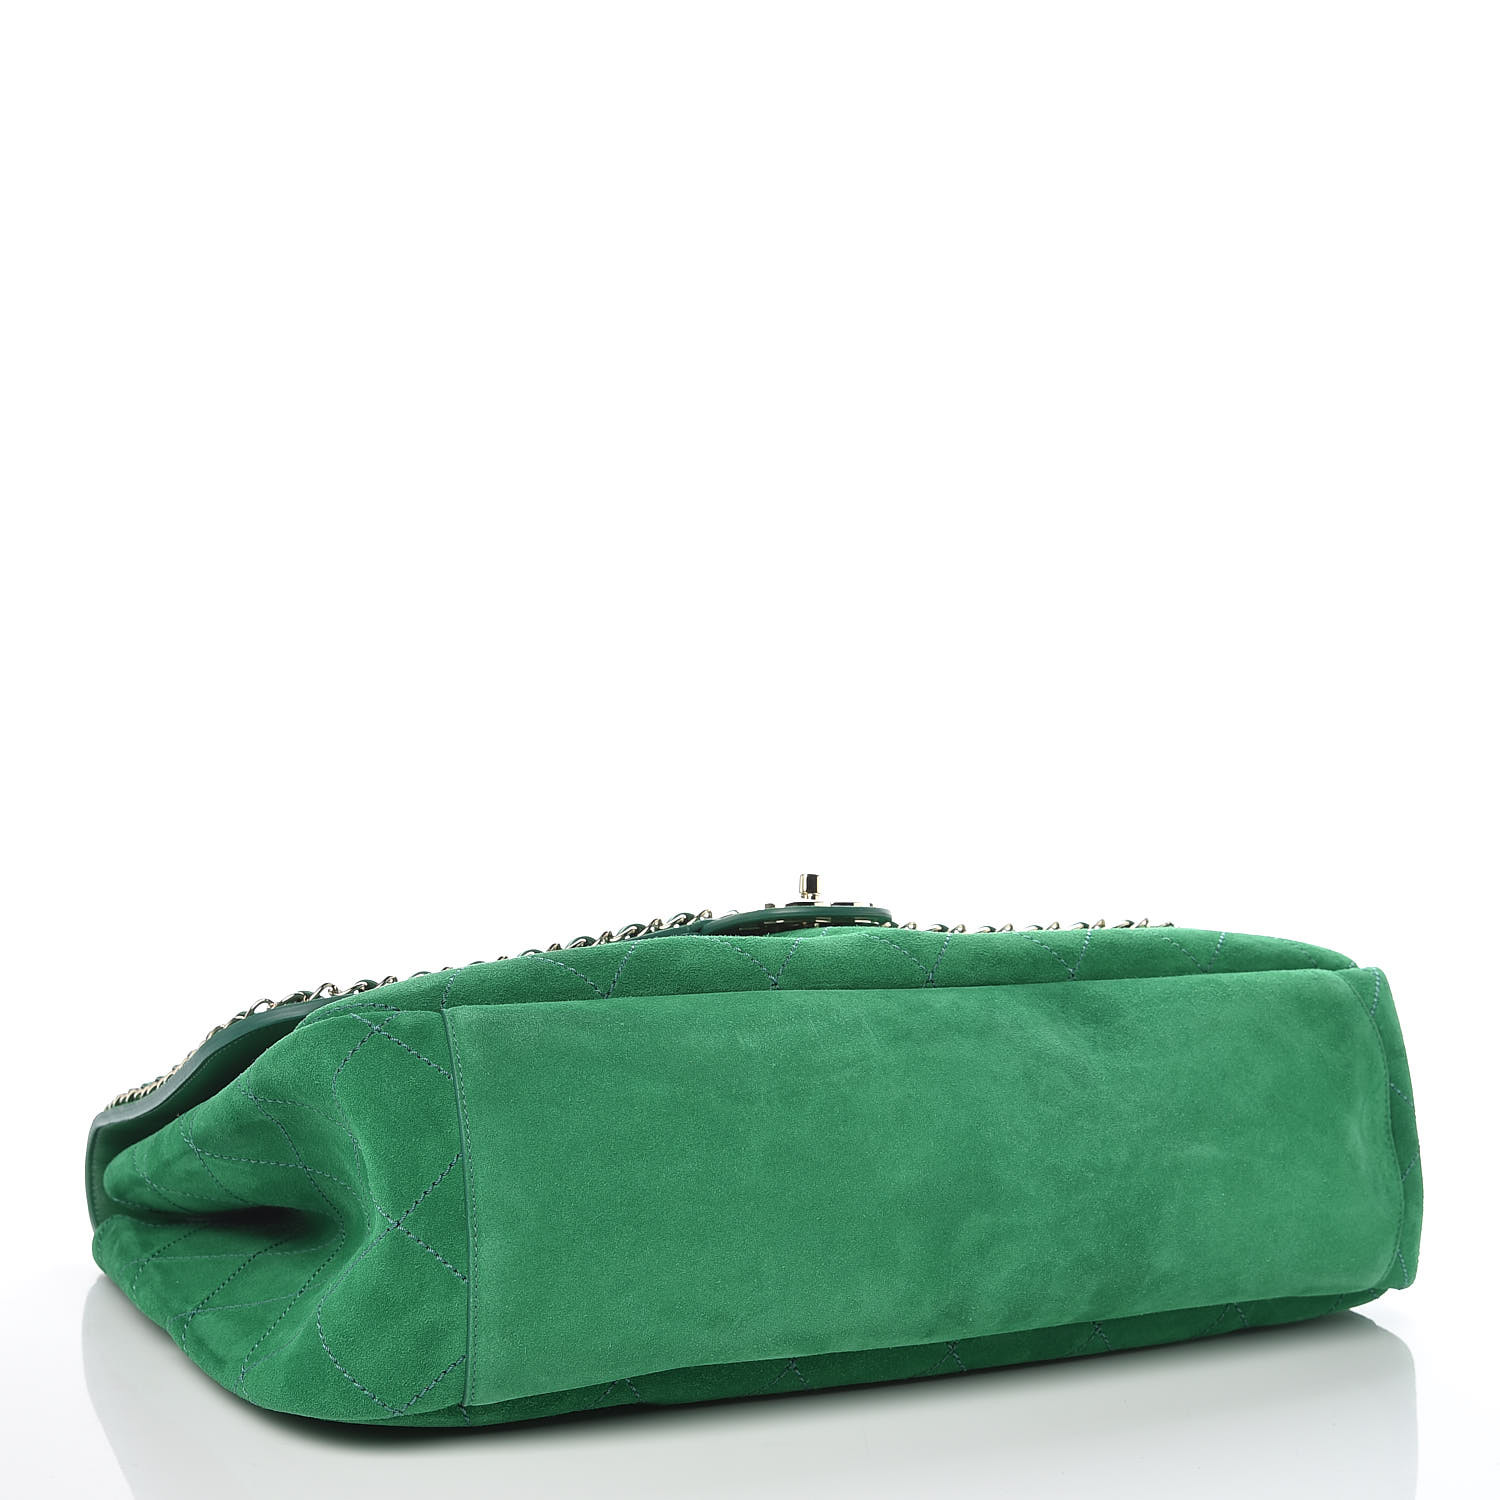 pharrell green chanel bag